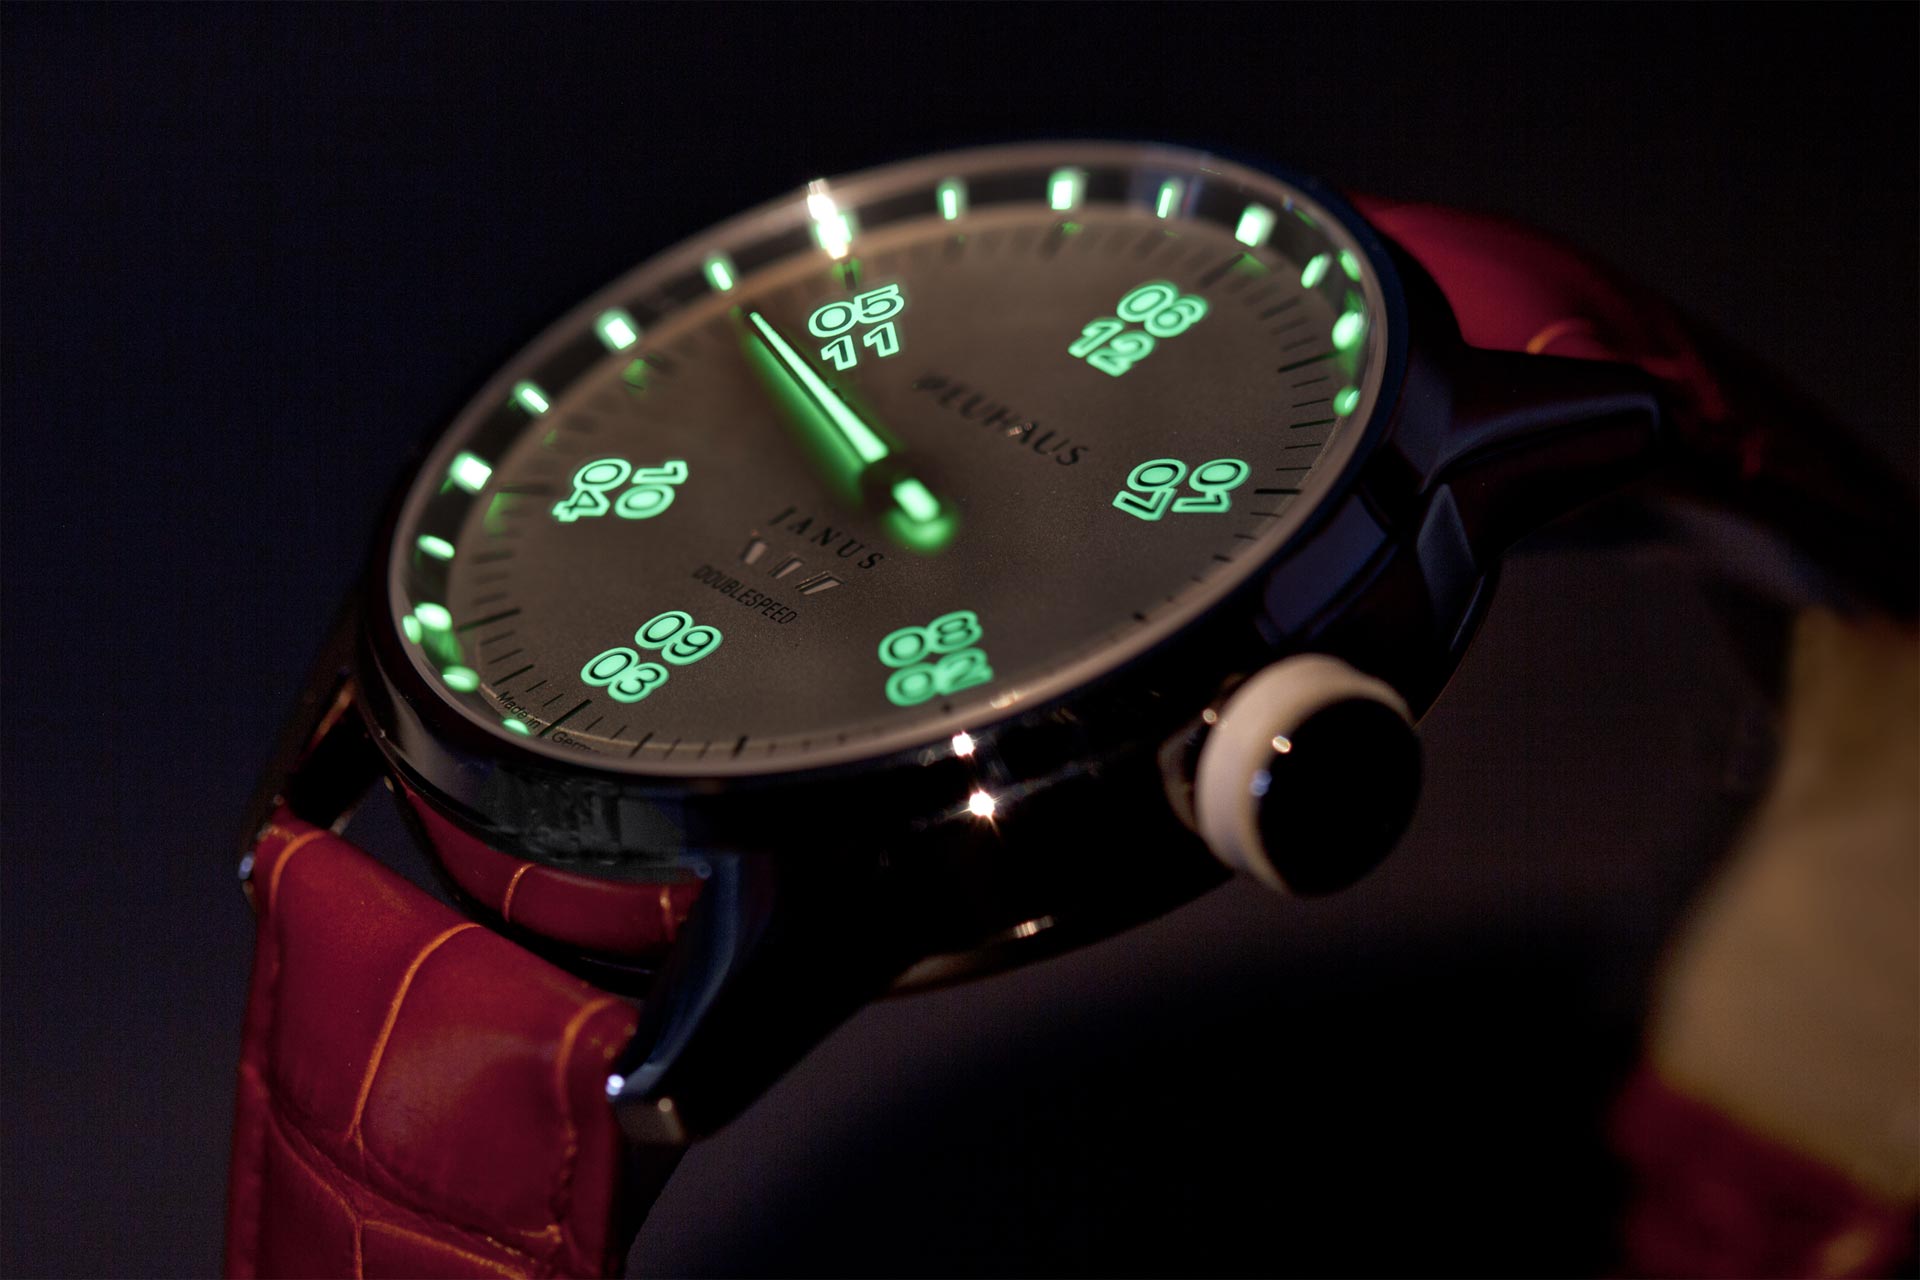 Einzeigeruhr von NEUHAUS Timepieces, Modell JANUS DoubleSpeed